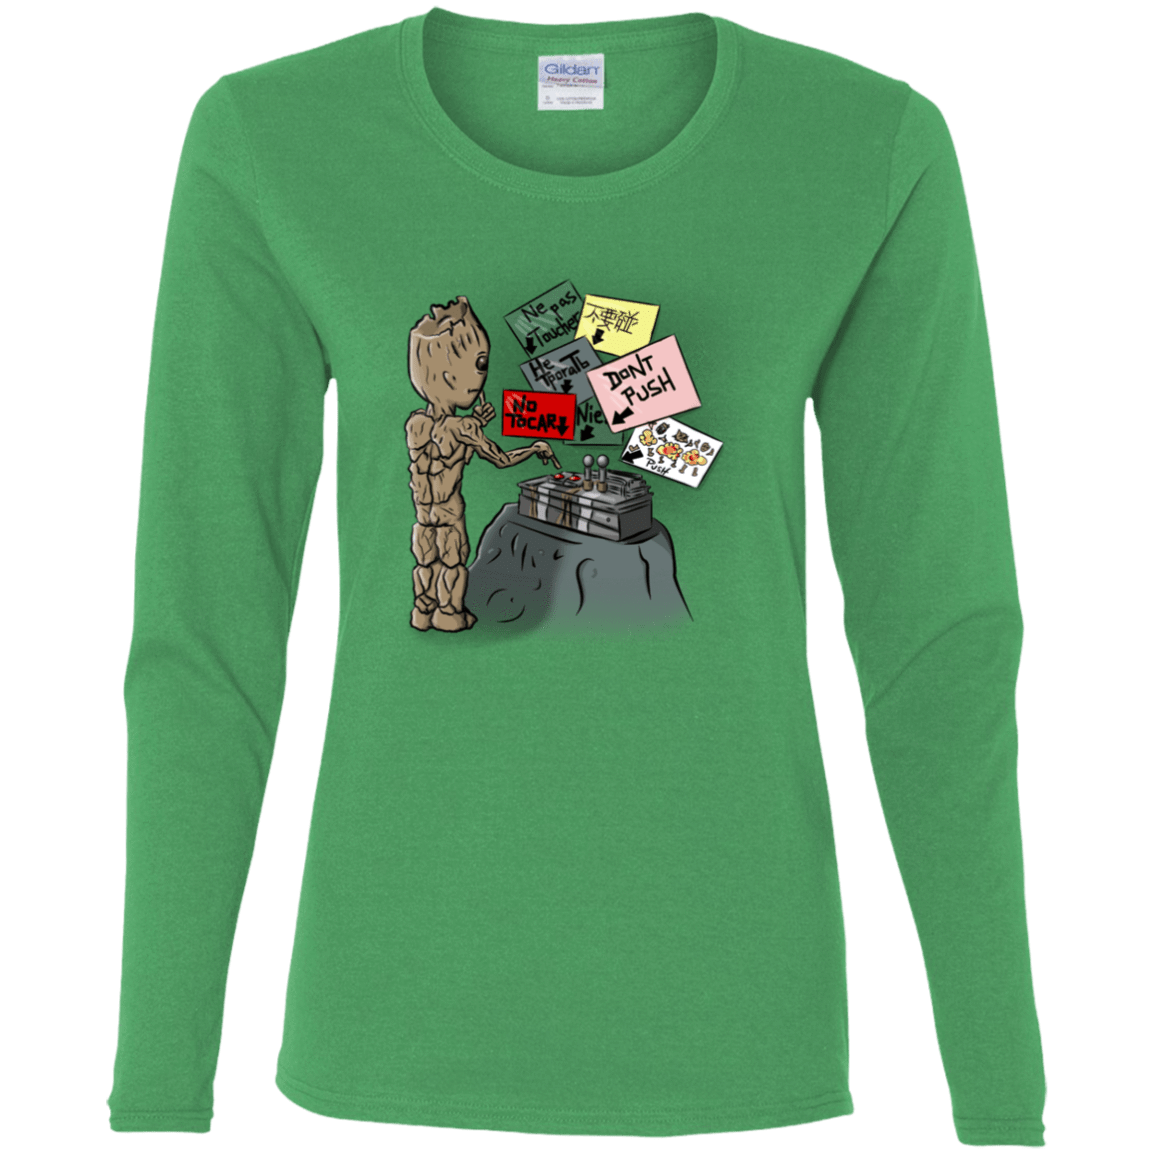 T-Shirts Irish Green / S Groot No Touch Women's Long Sleeve T-Shirt